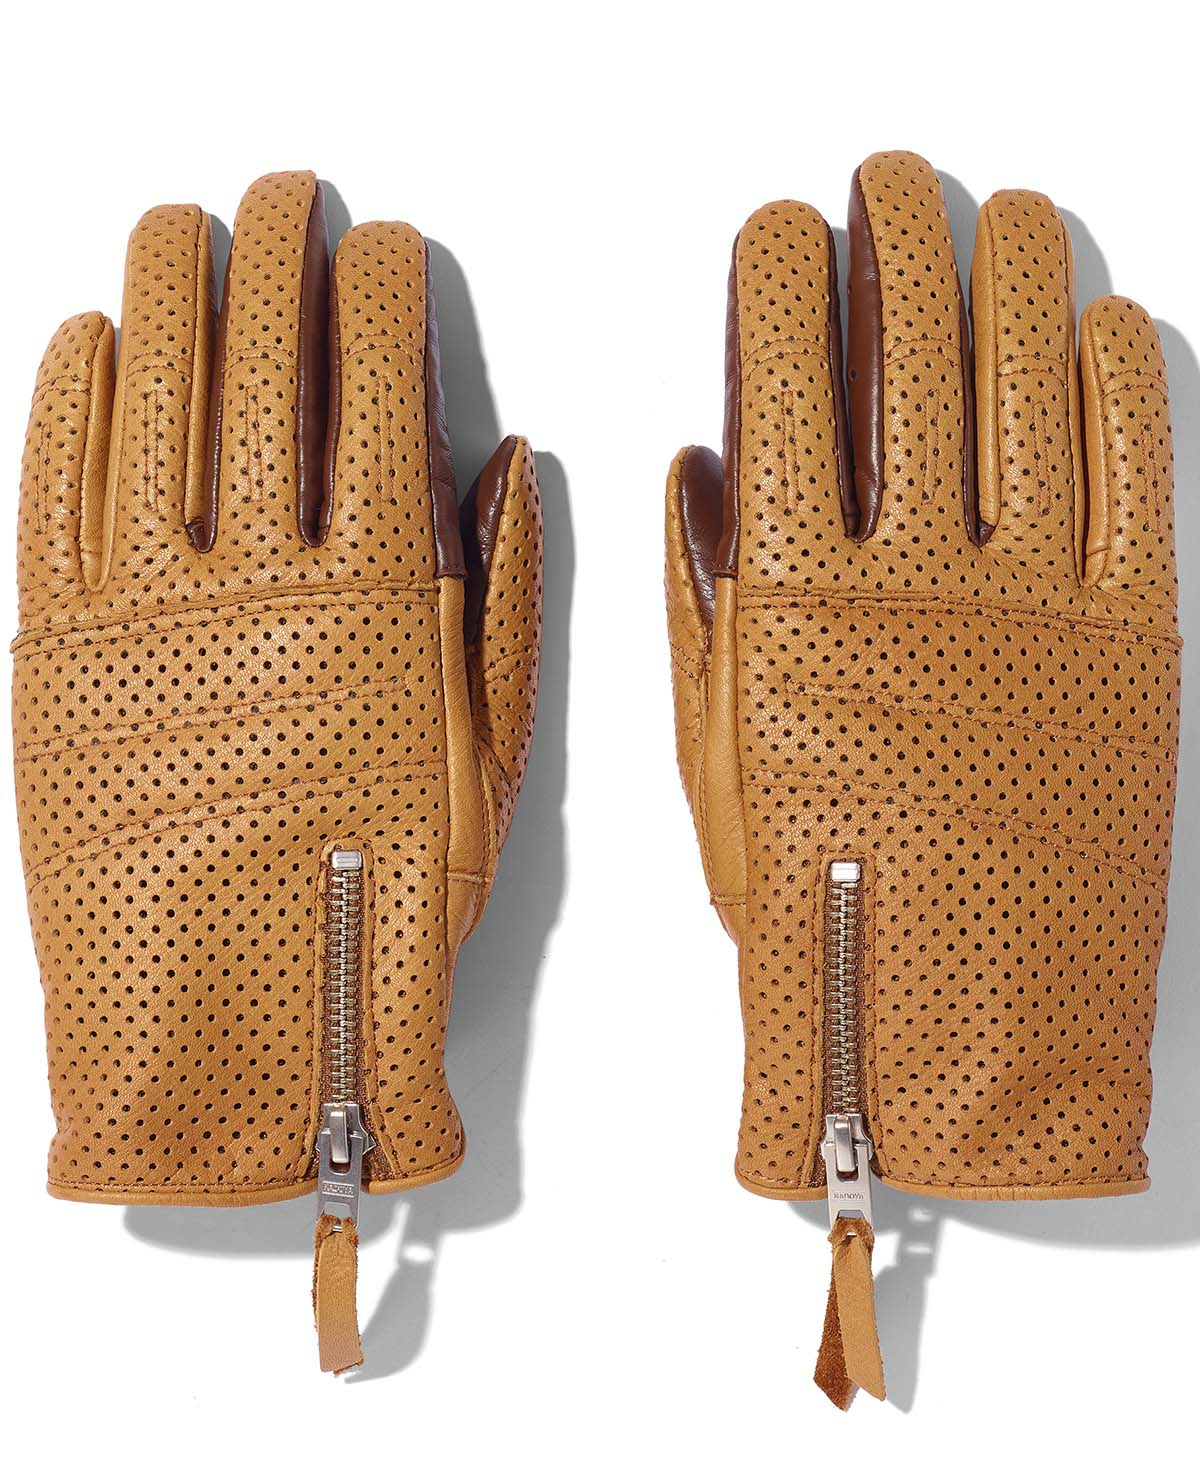 Rox Glove -pl / Brown